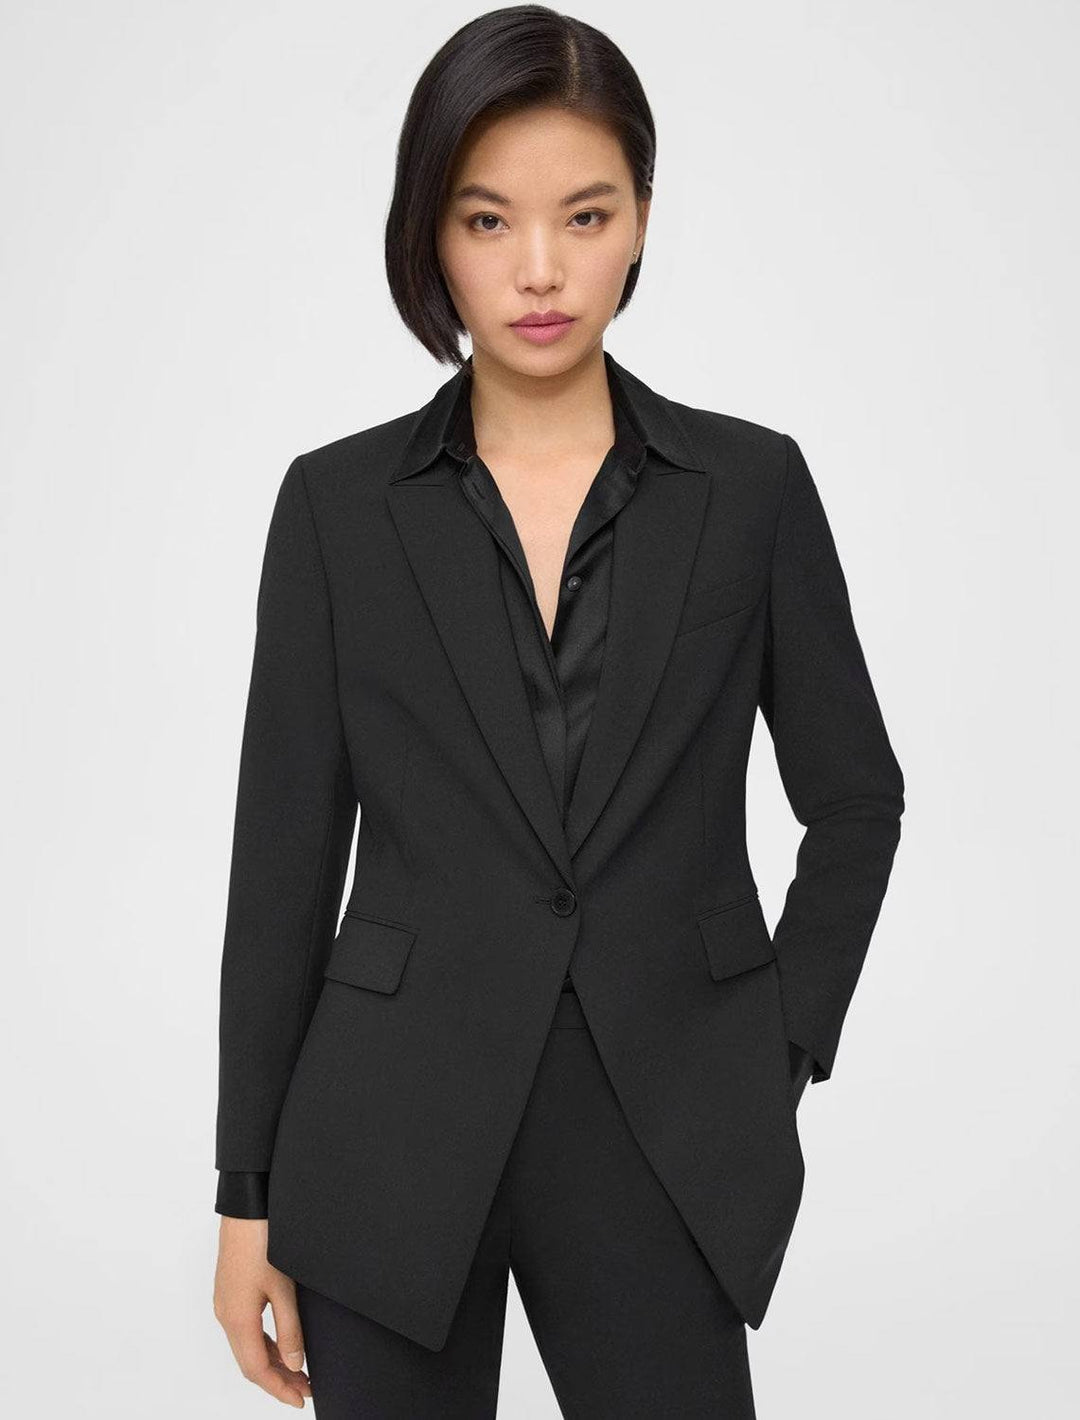 Model wearing Theory's etiennette blazer in black.